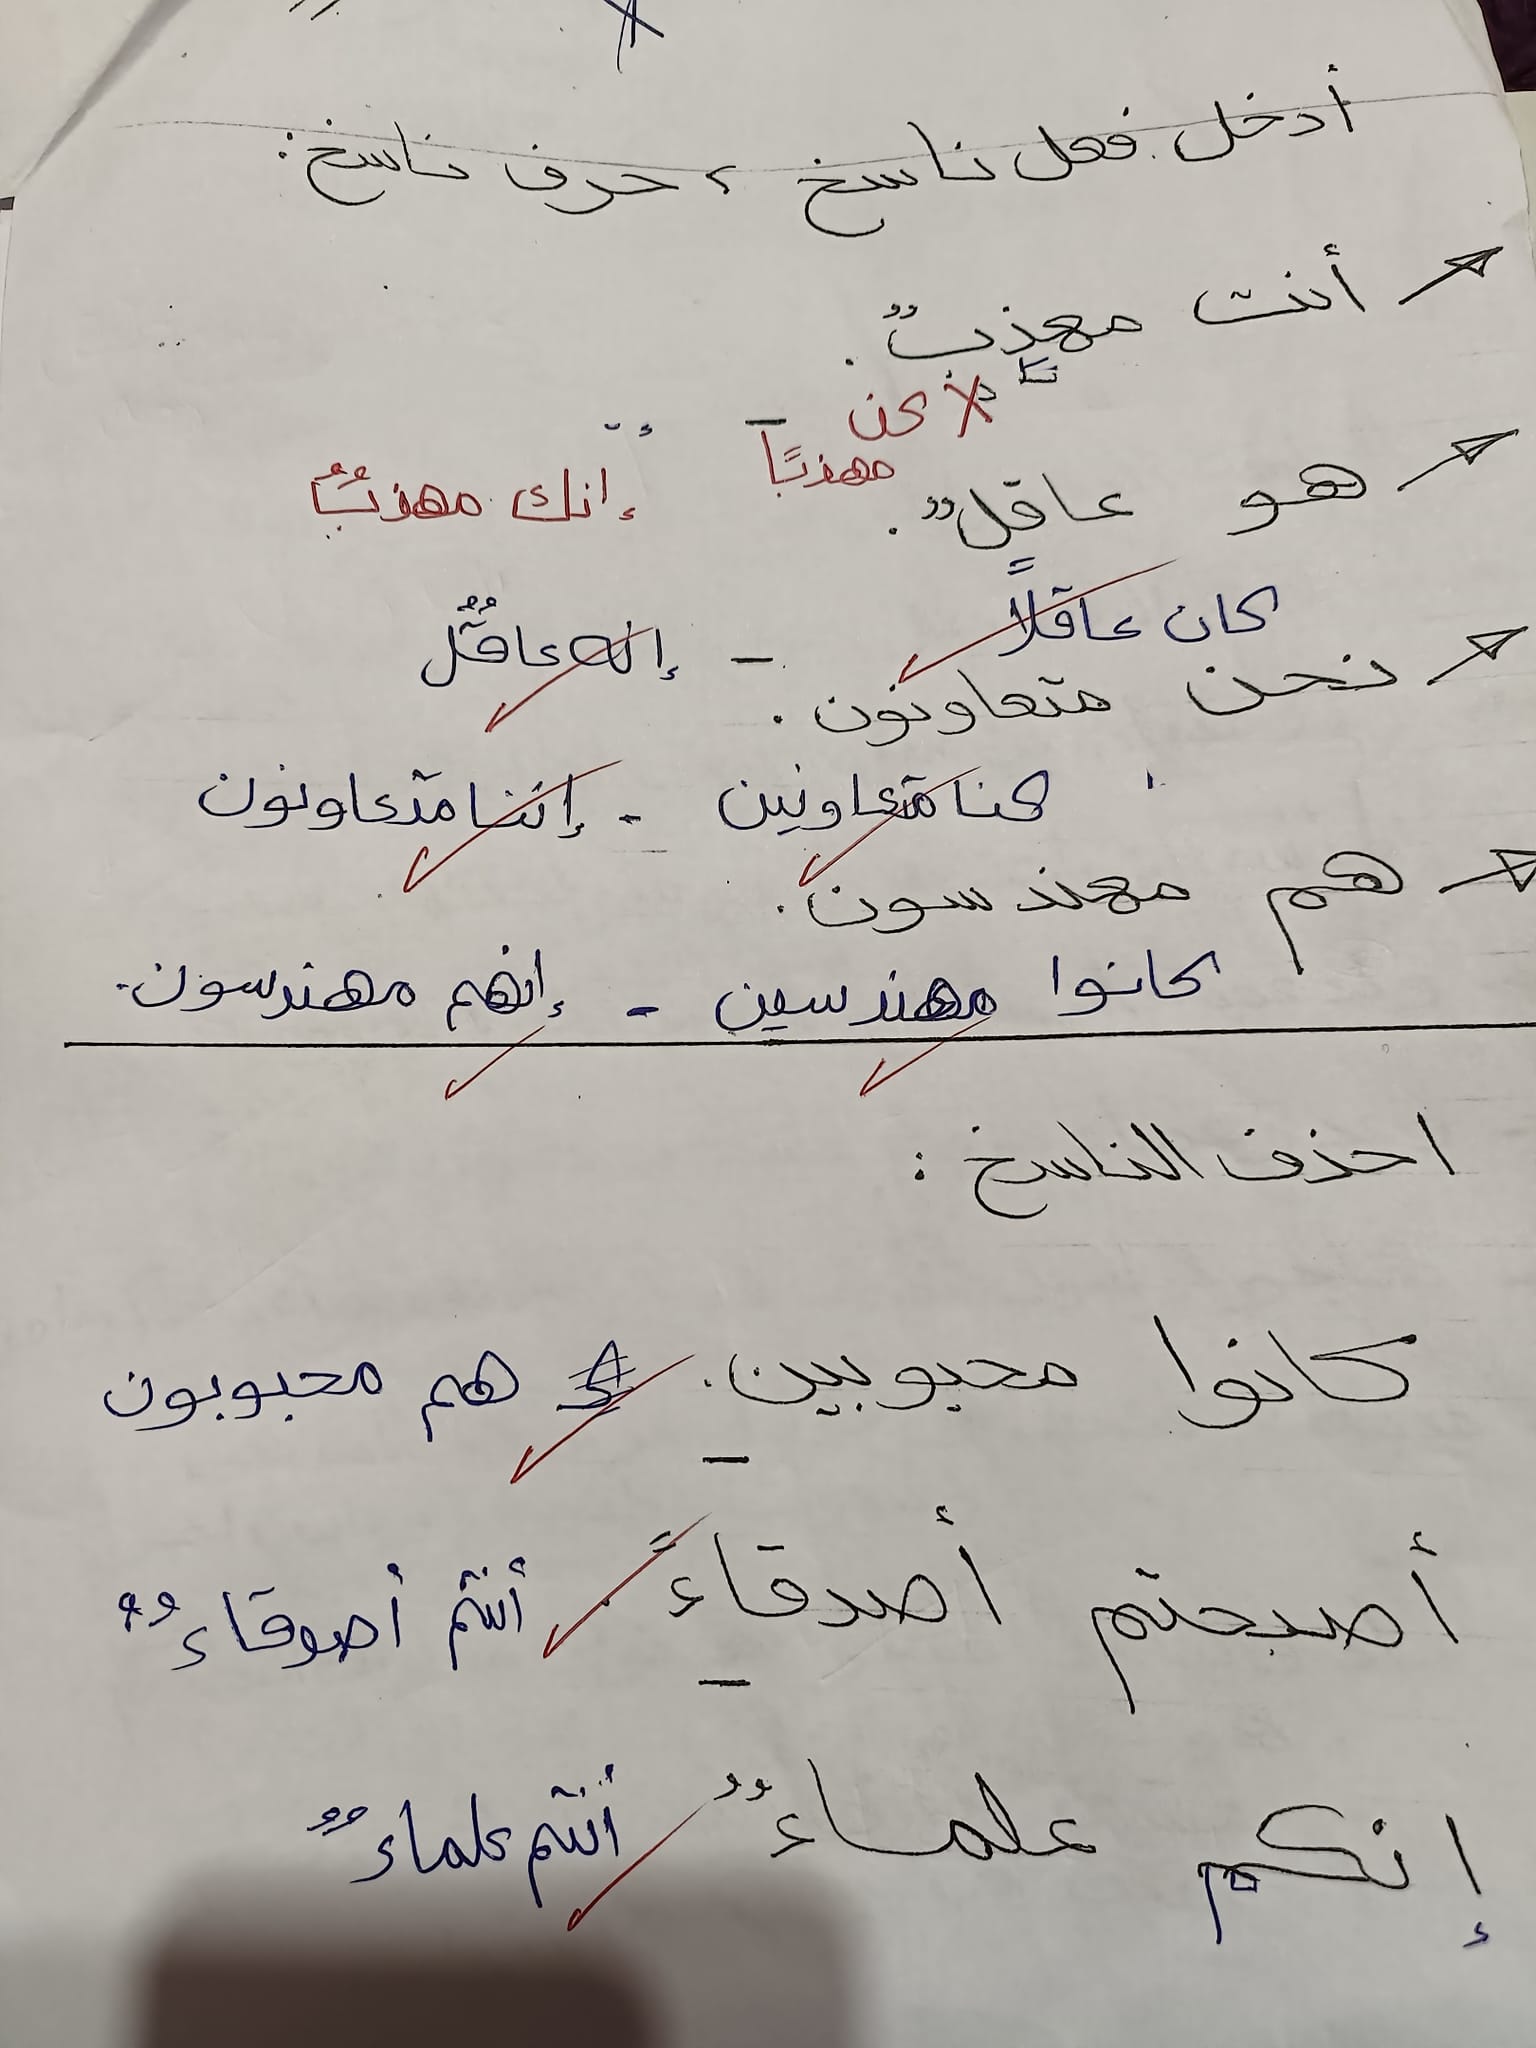 مدرس اول مراجعة نحو بالاجابات فى اللغة العربية للصف الأول الإعدادي الترم الأول أ/ مها سعيد	